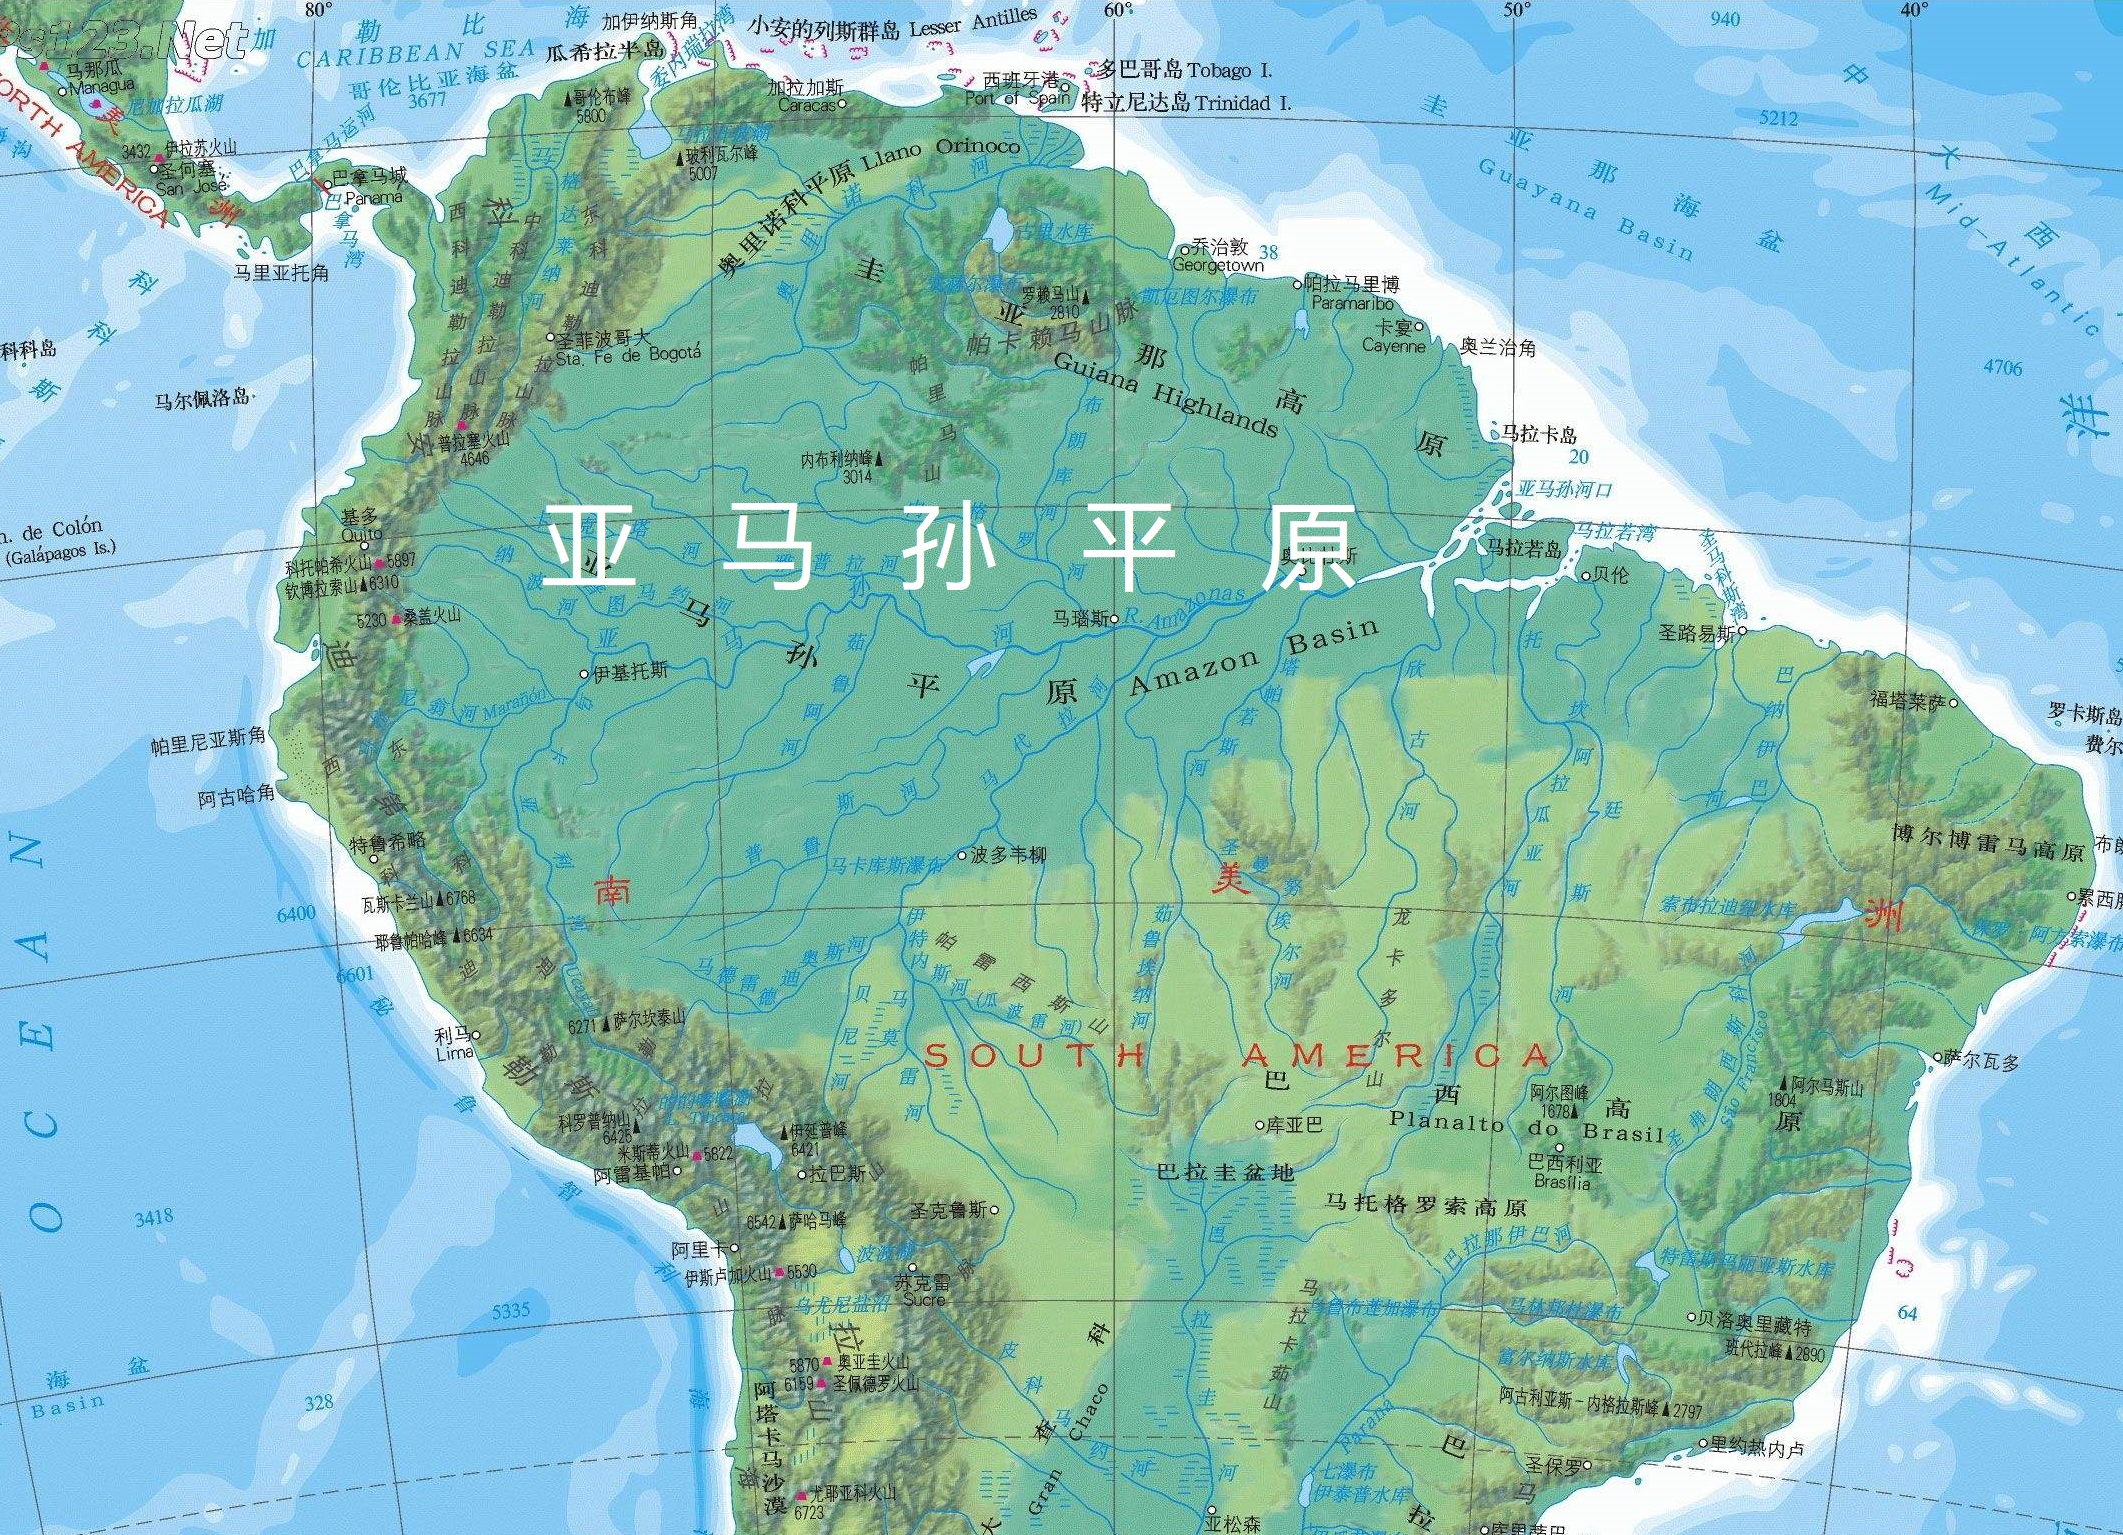 所以,平原地形是世界上人口分布最多的地形类型,比如我国的华北平原